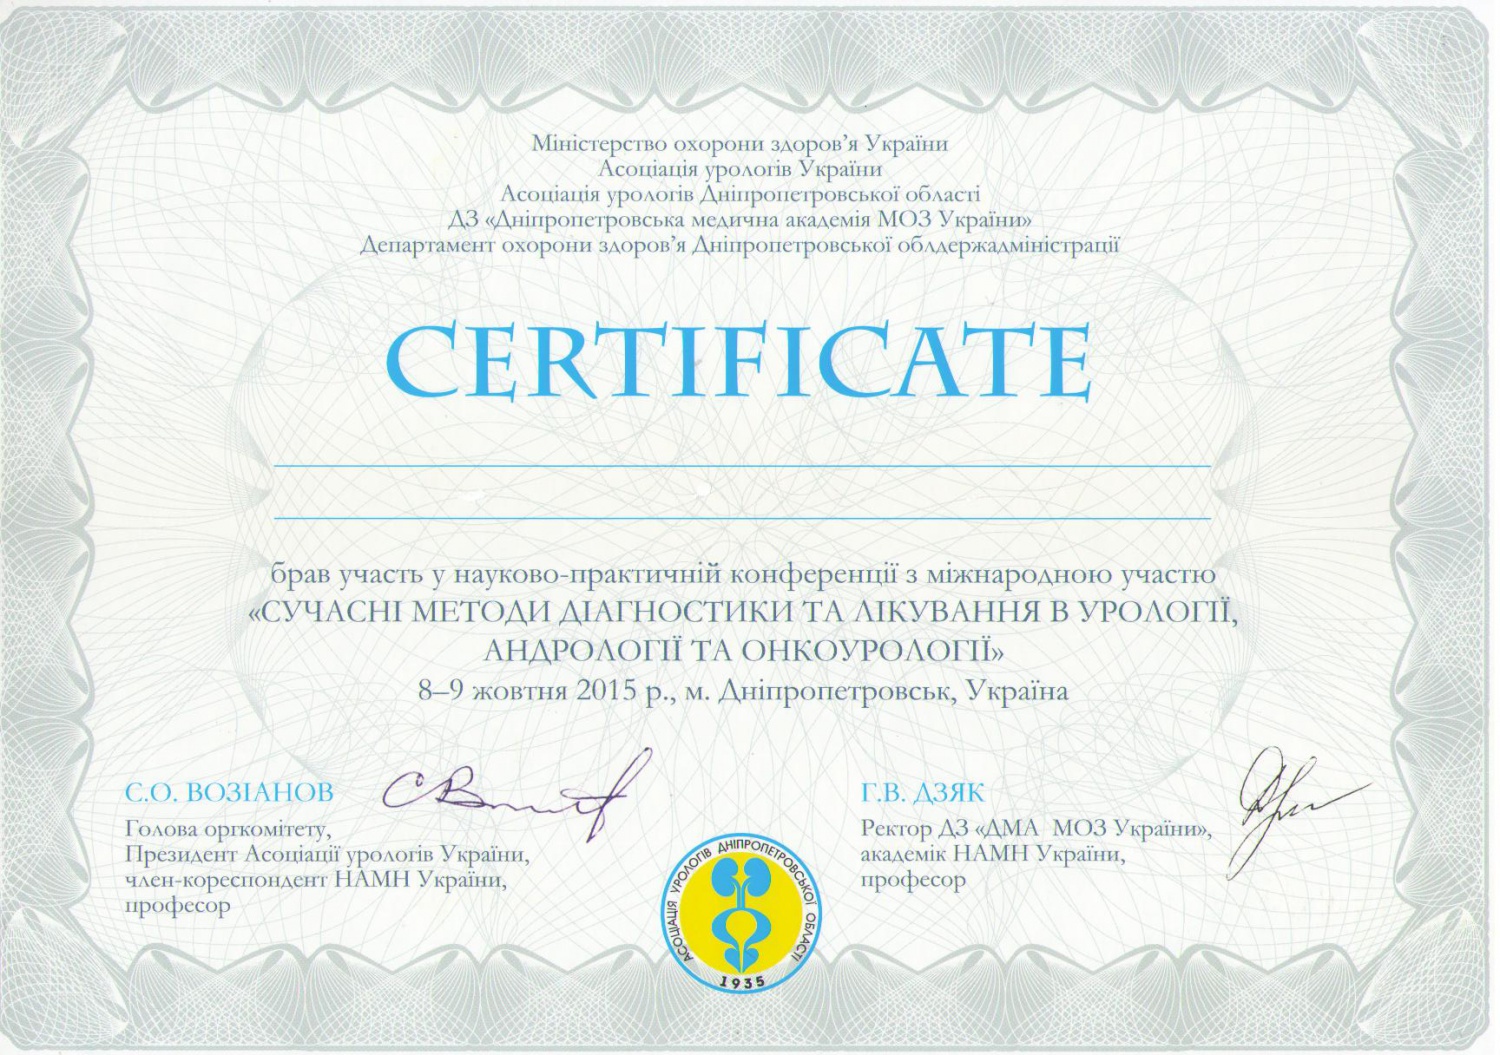 Когут В.В. - Сертификат про участие в научно-практической конференции "Современные методы диагностики и лечения в урологии, андрологии и онкоурологии" (2015 г.)